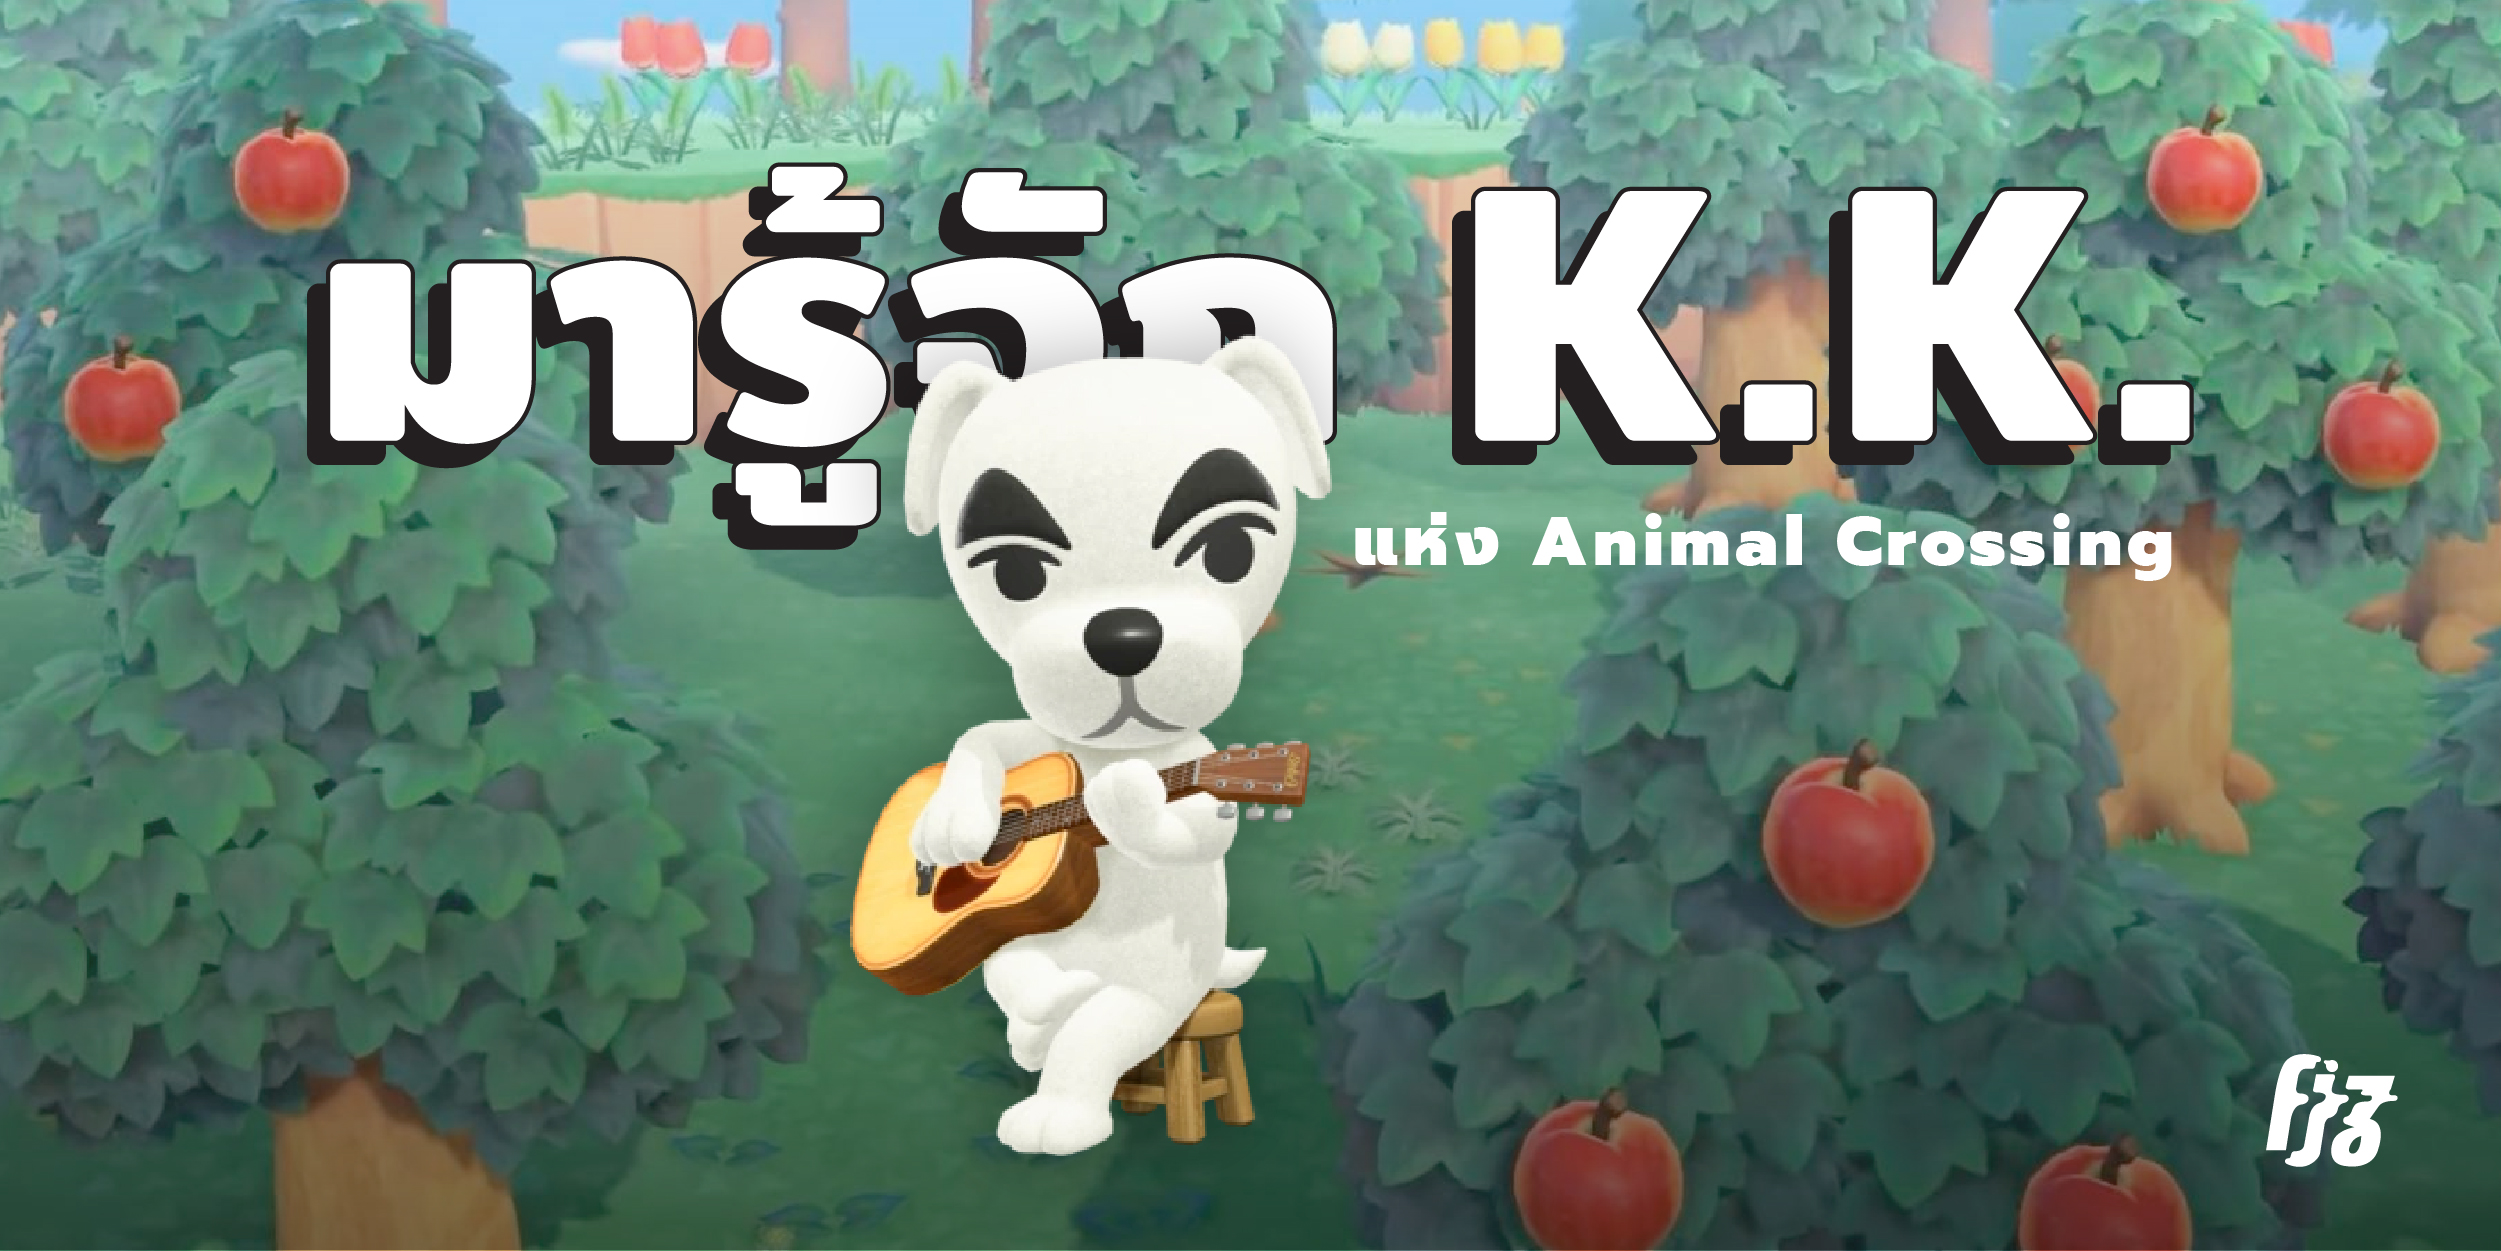 K.K. เจ้าสุนัขคิ้วเข้มหน้าตาเคร่งขรึมพร้อมความติสต์ที่เป็นกันเองน่าเข้าหา ใน Animal Crossing เขามักจะมาพร้อมกีตาร์โฟล์กตัวจิ๋วน่ารัก ใครเห็นก็ต้องหลงรัก